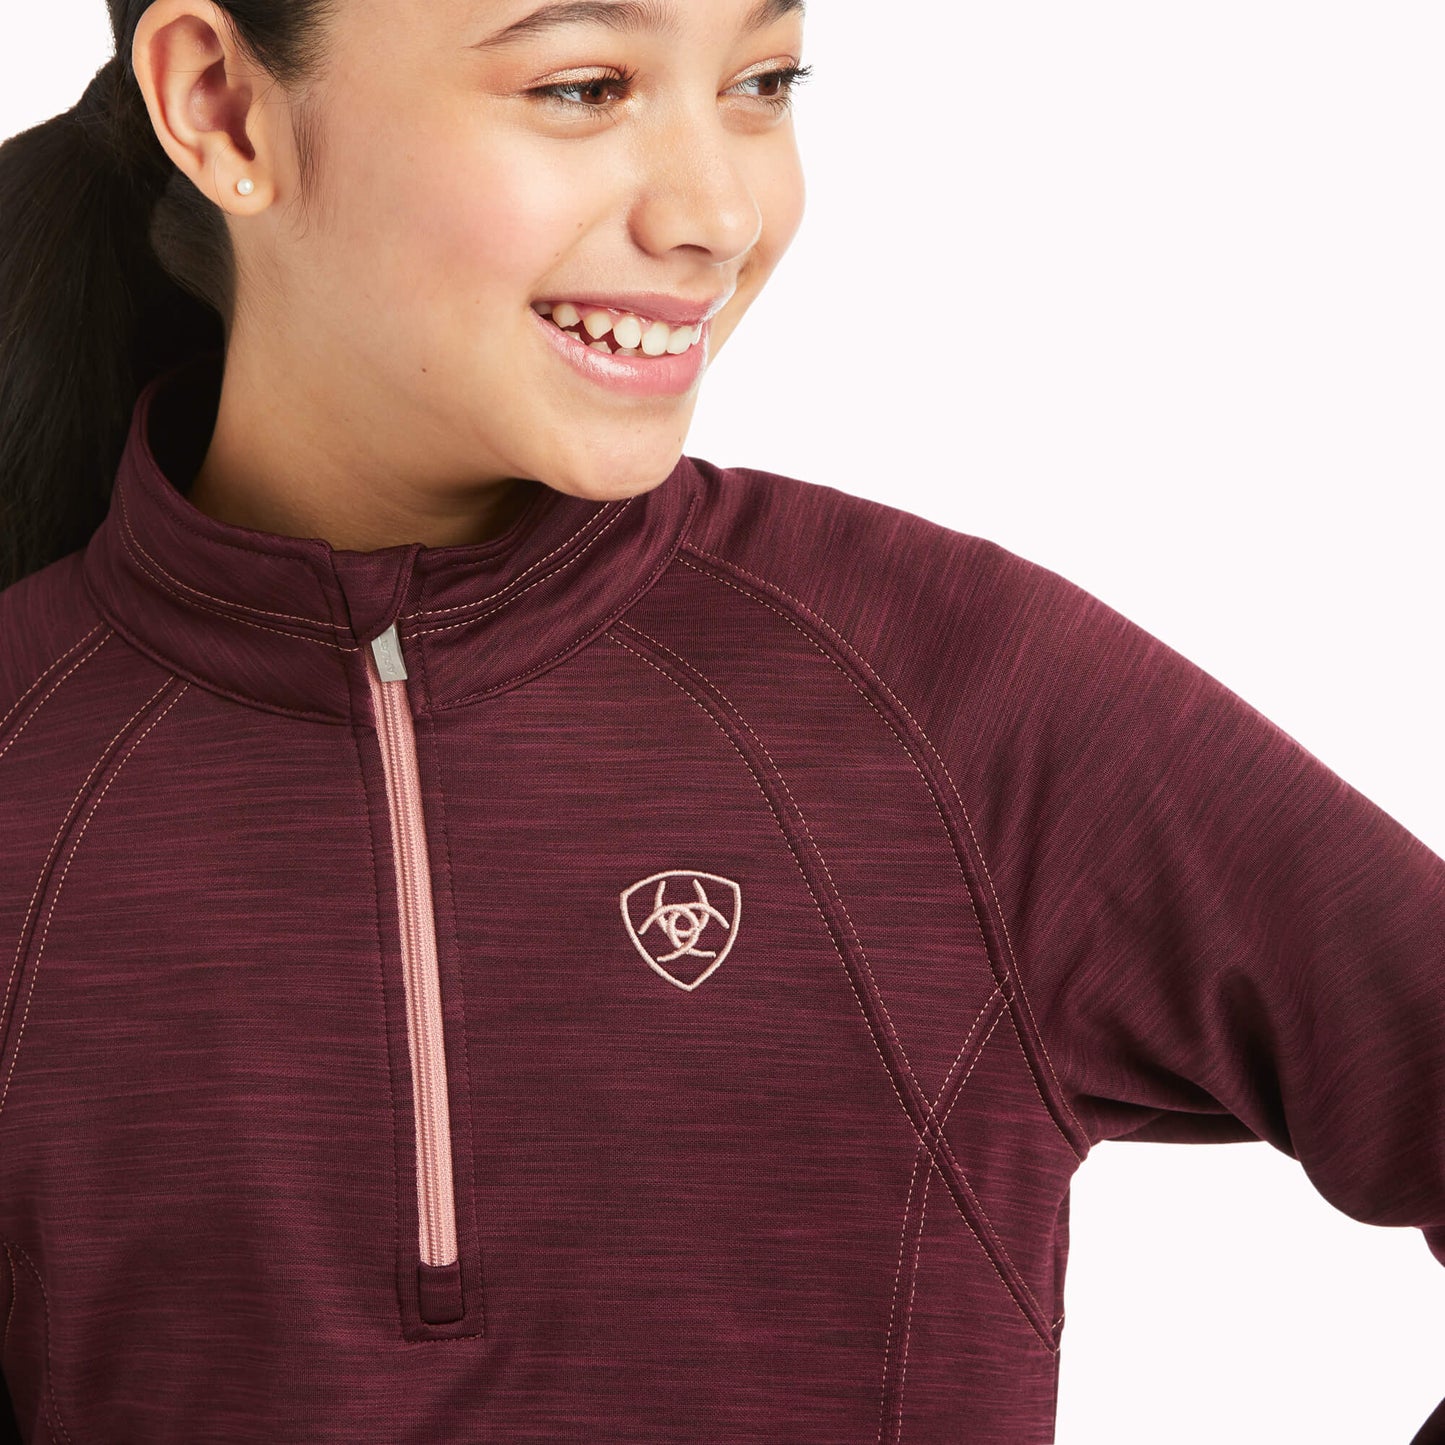 Ariat Children's Tek Team Half Zip Windsor Wine Sweatshirt 10037638